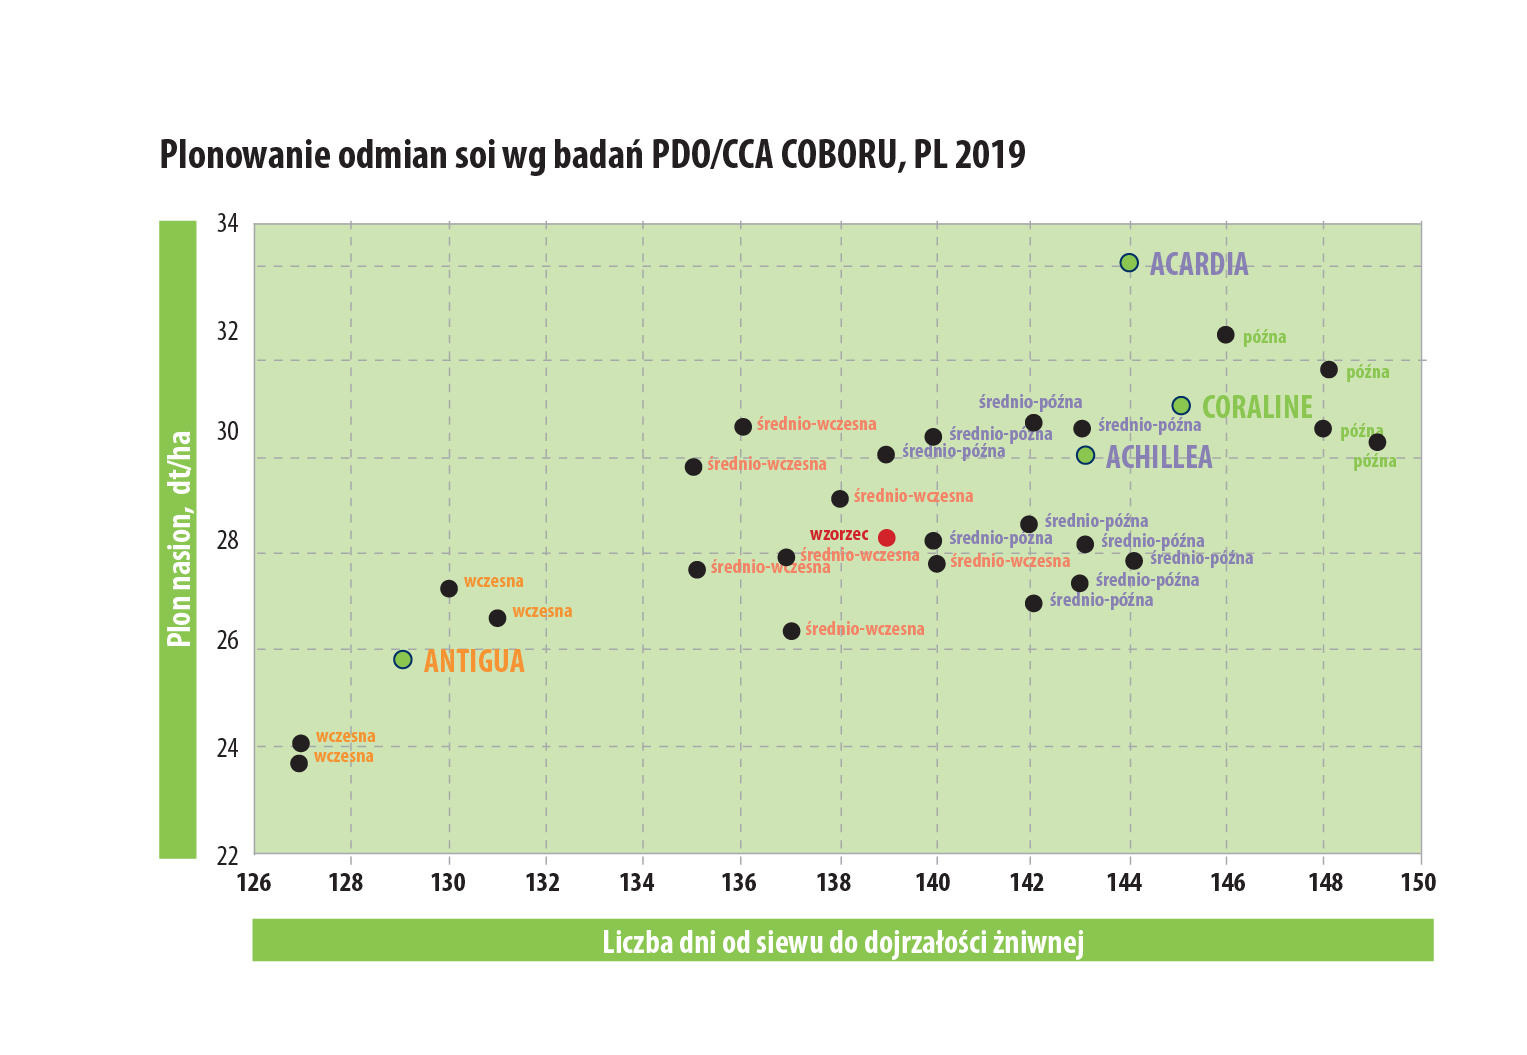 Plonowanie odmiany ACHILLEA na tle innych odmian soi badanych przez COBORU w 2019